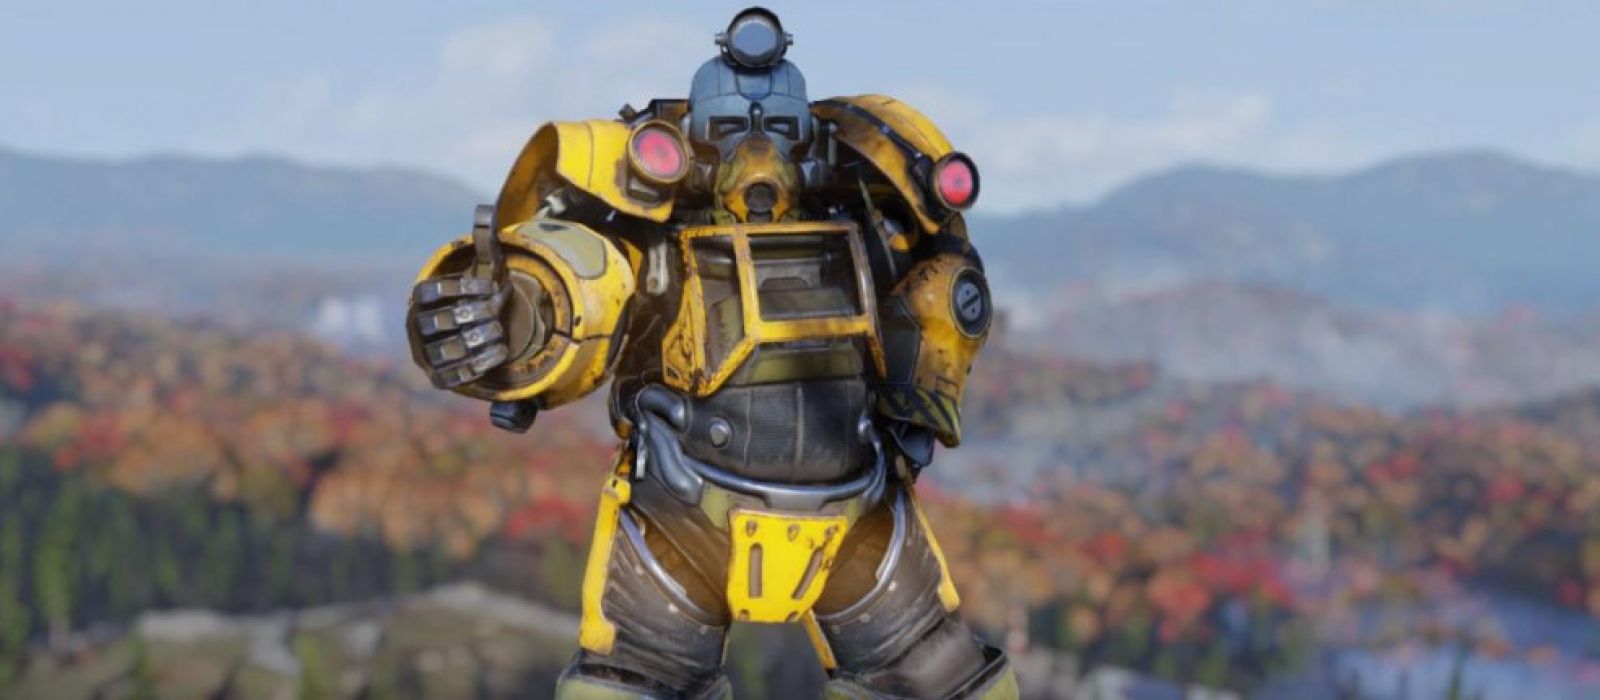 Доспехи Экскаватора (Excavator Power Armor) в Fallout 76: Уникальная силовая броня